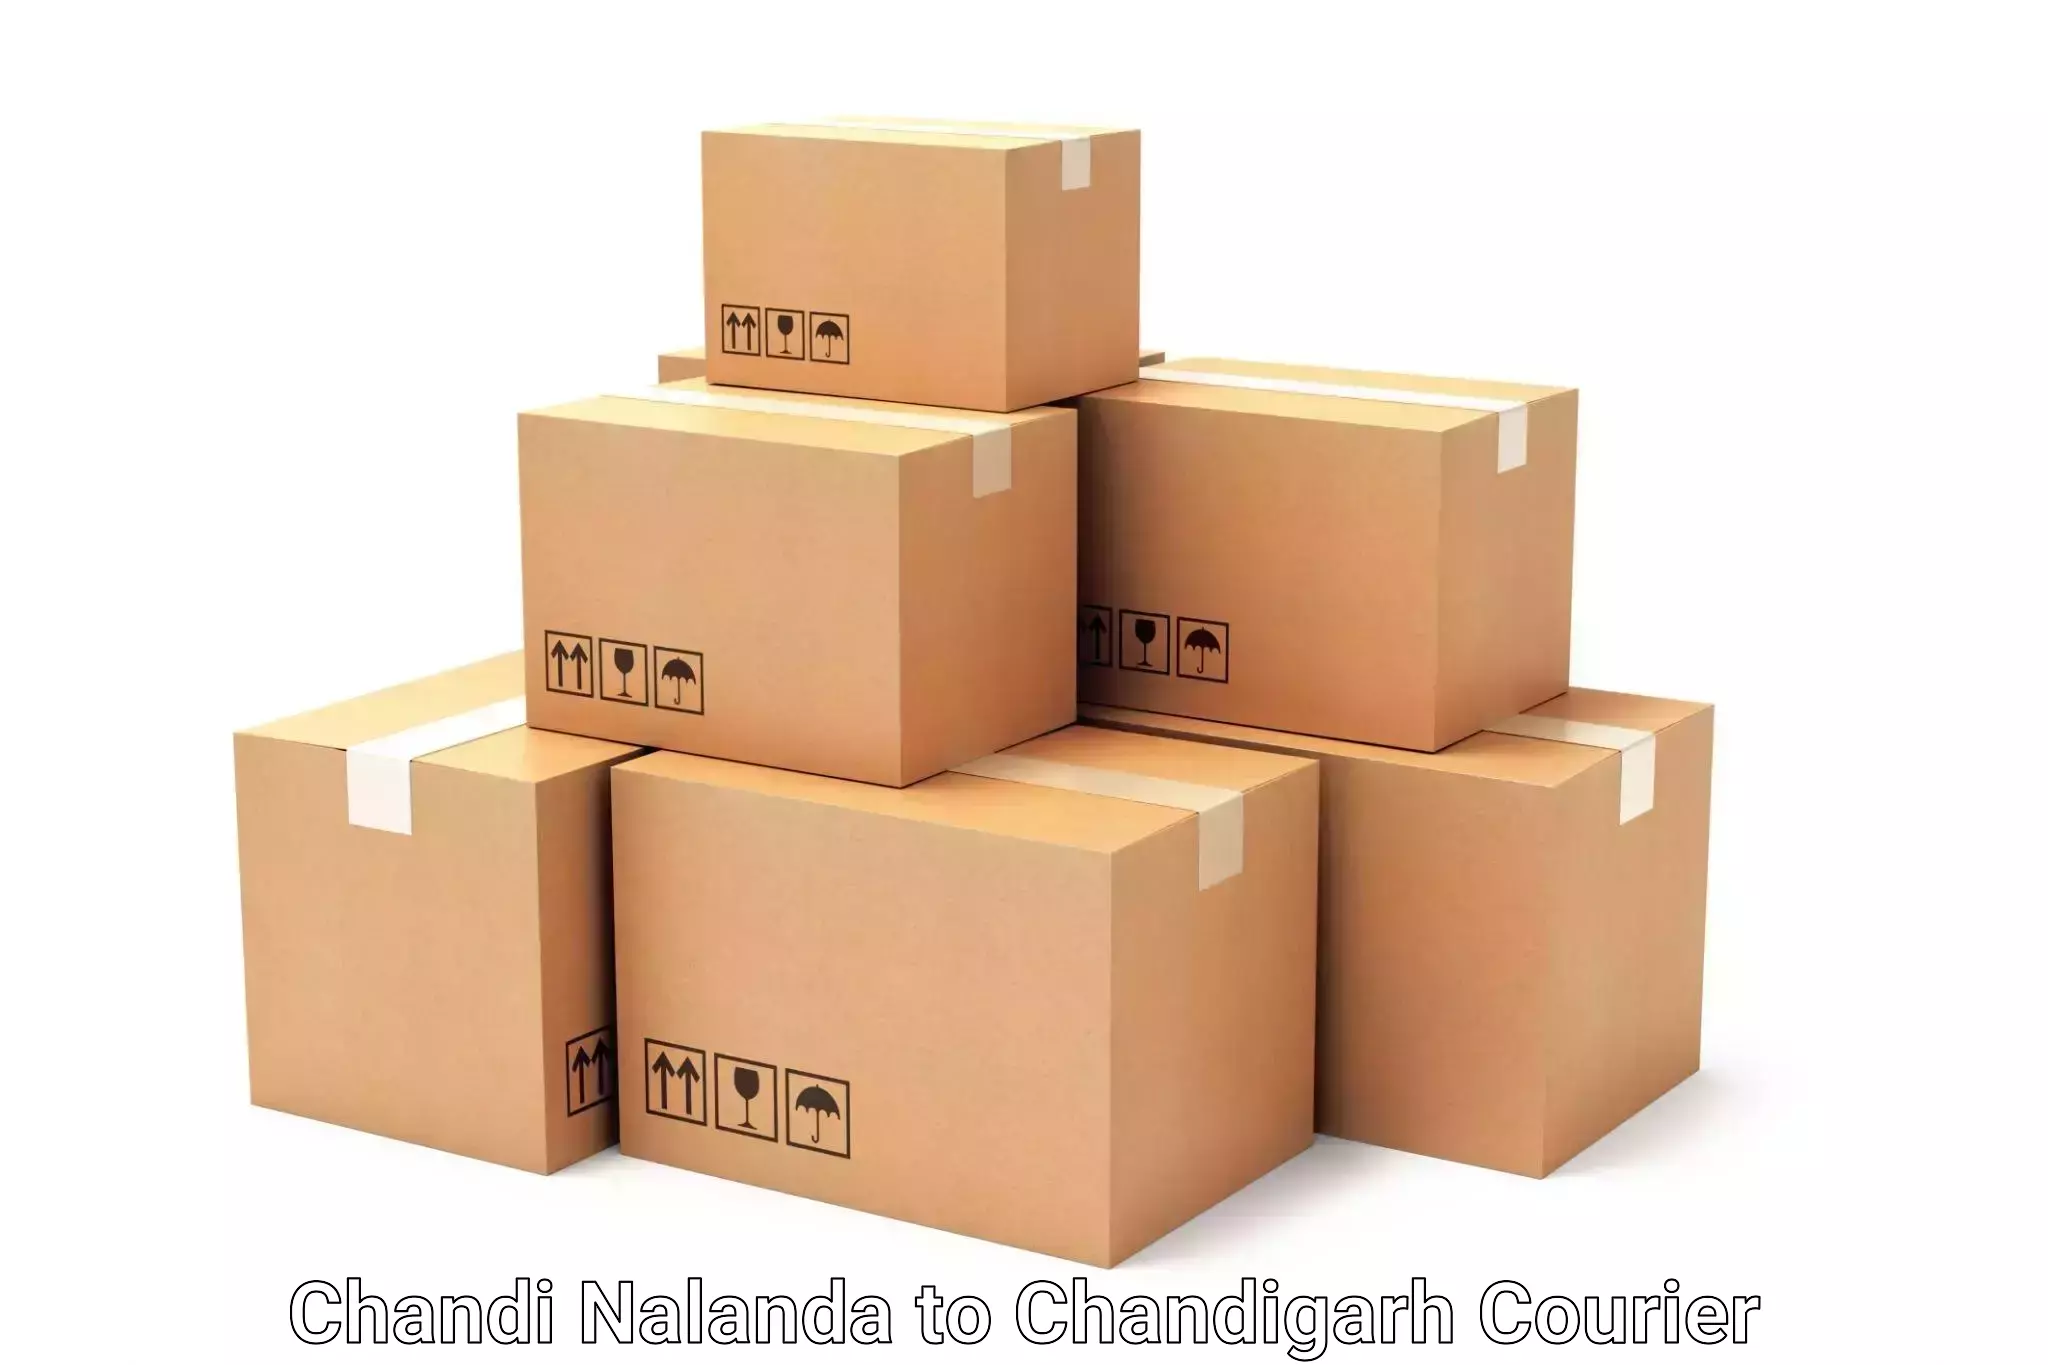 Luggage transport consultancy Chandi Nalanda to Chandigarh